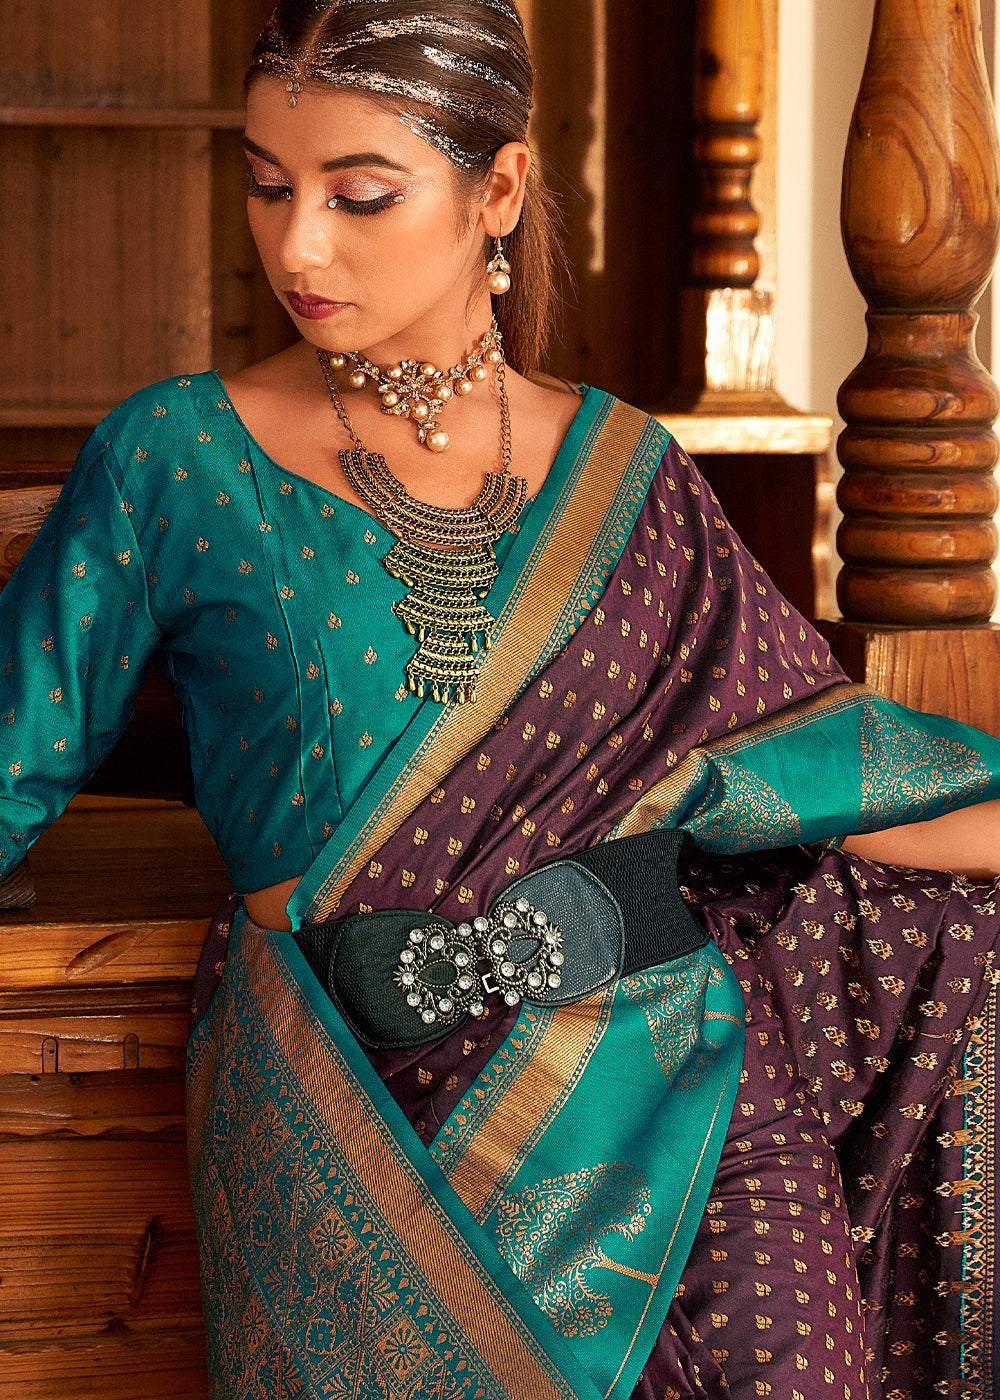 Know all about banarasi silk and banarasi saree the heritage of varanasi  and india | एक बनारसी साड़ी तैयार करने में लगते हैं तीन कारीगर, ये है सिल्क  और इसके इतिहास की